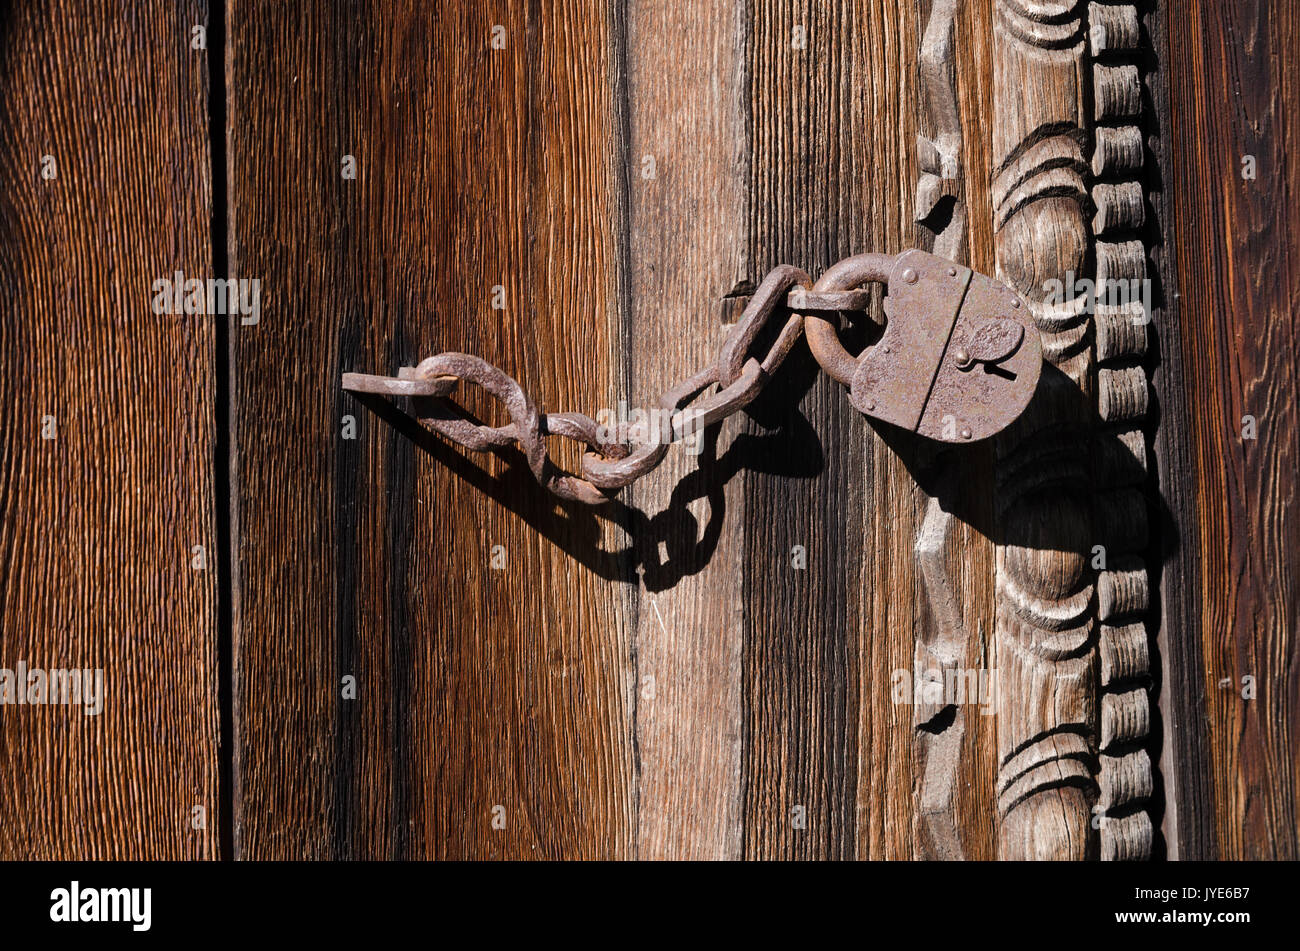 Verrouillage du fer sur une chaîne solide accroché sur une barrière en bois, une texture, une photo couleur horizontal Banque D'Images